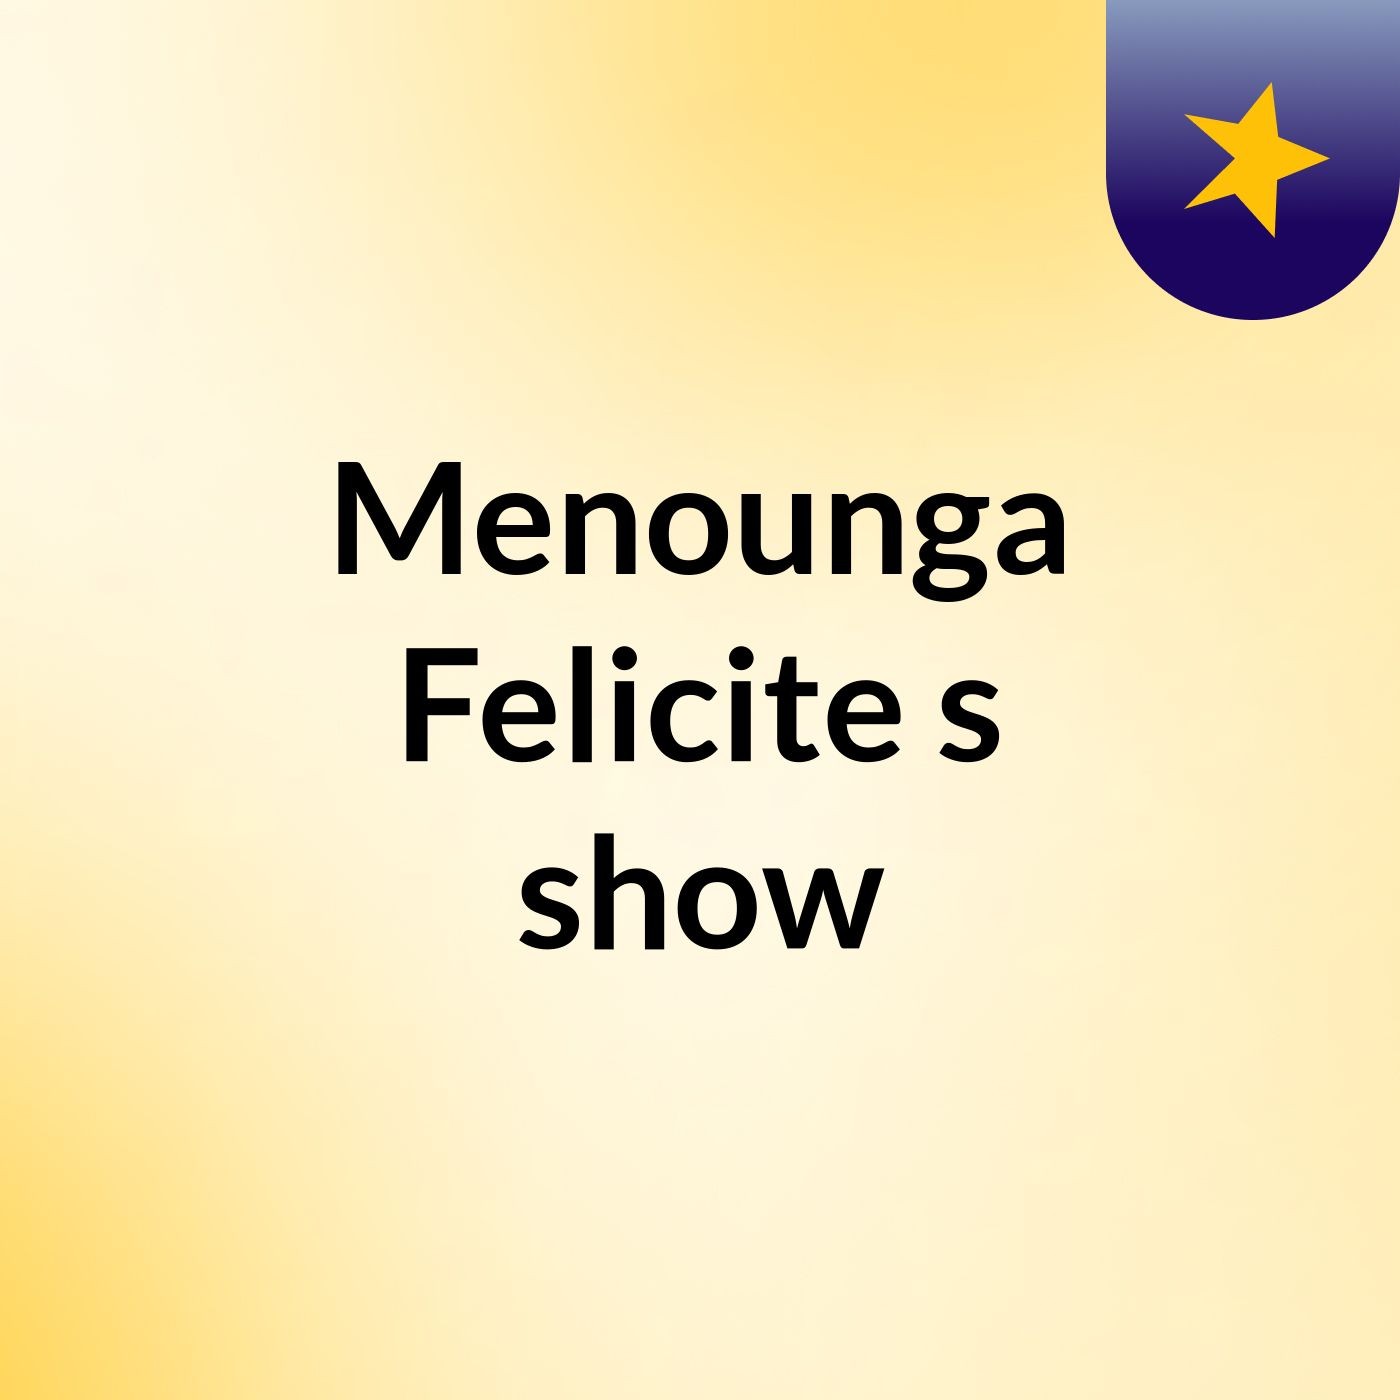 Menounga Felicite's show